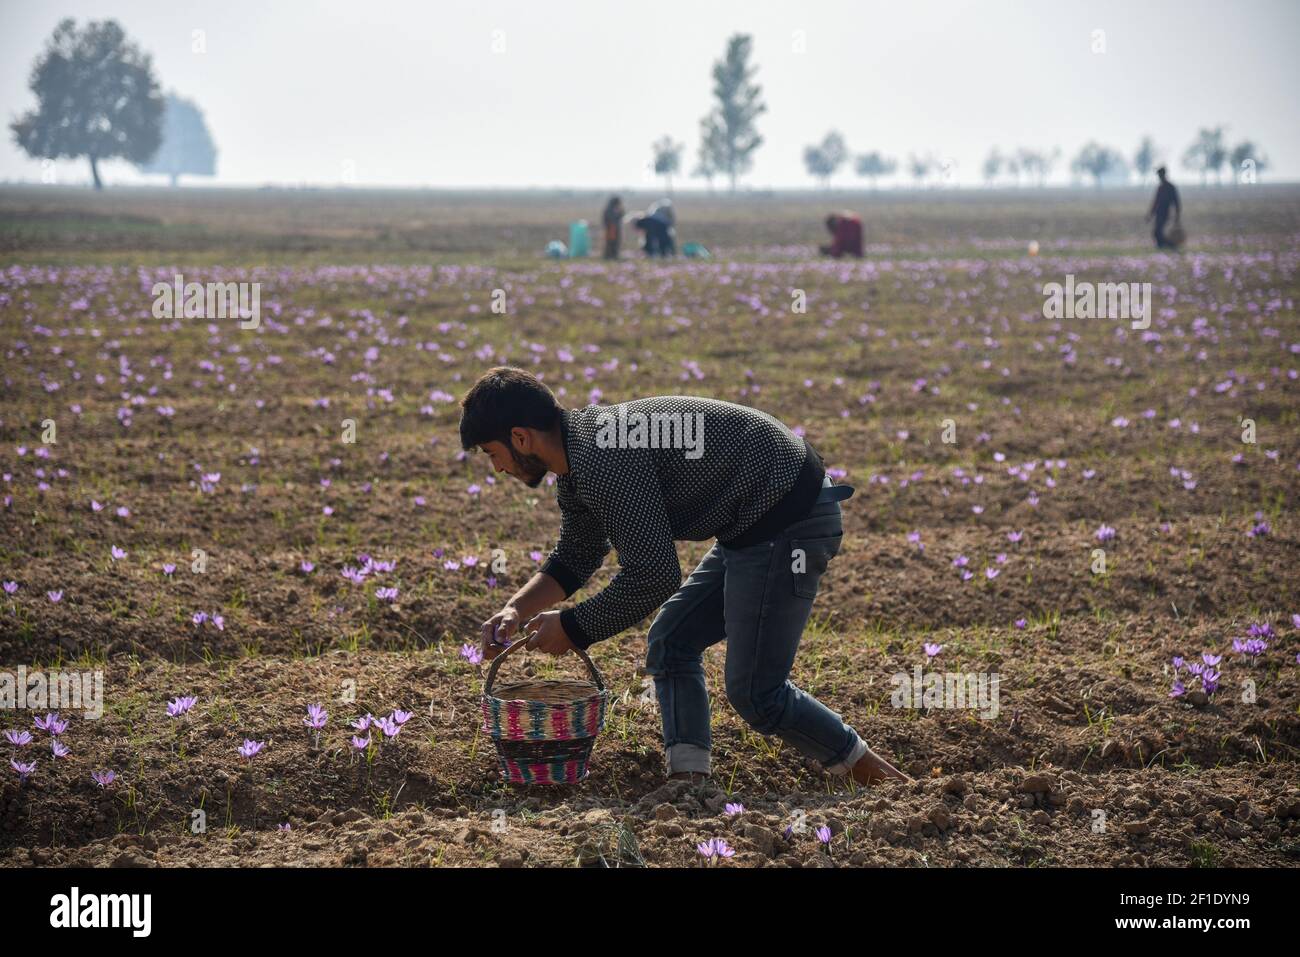 Los agricultores de Cachemira cosechan azafrán en un campo de Pampore Cachemira. Cachemira es conocida por su azafrán de alta calidad, una especia derivada de la flor de crocus. El azafrán se cultiva comercialmente principalmente en la India, España e Irán. Pero la variedad Cachemira es considerada la mejor y la más cara. Cultivado por primera vez en Grecia, el azafrán se ha cultivado en el valle de Cachemira durante cientos de años. (Foto de Irnes Abbas / SOPA Images/Sipa USA) Foto de stock